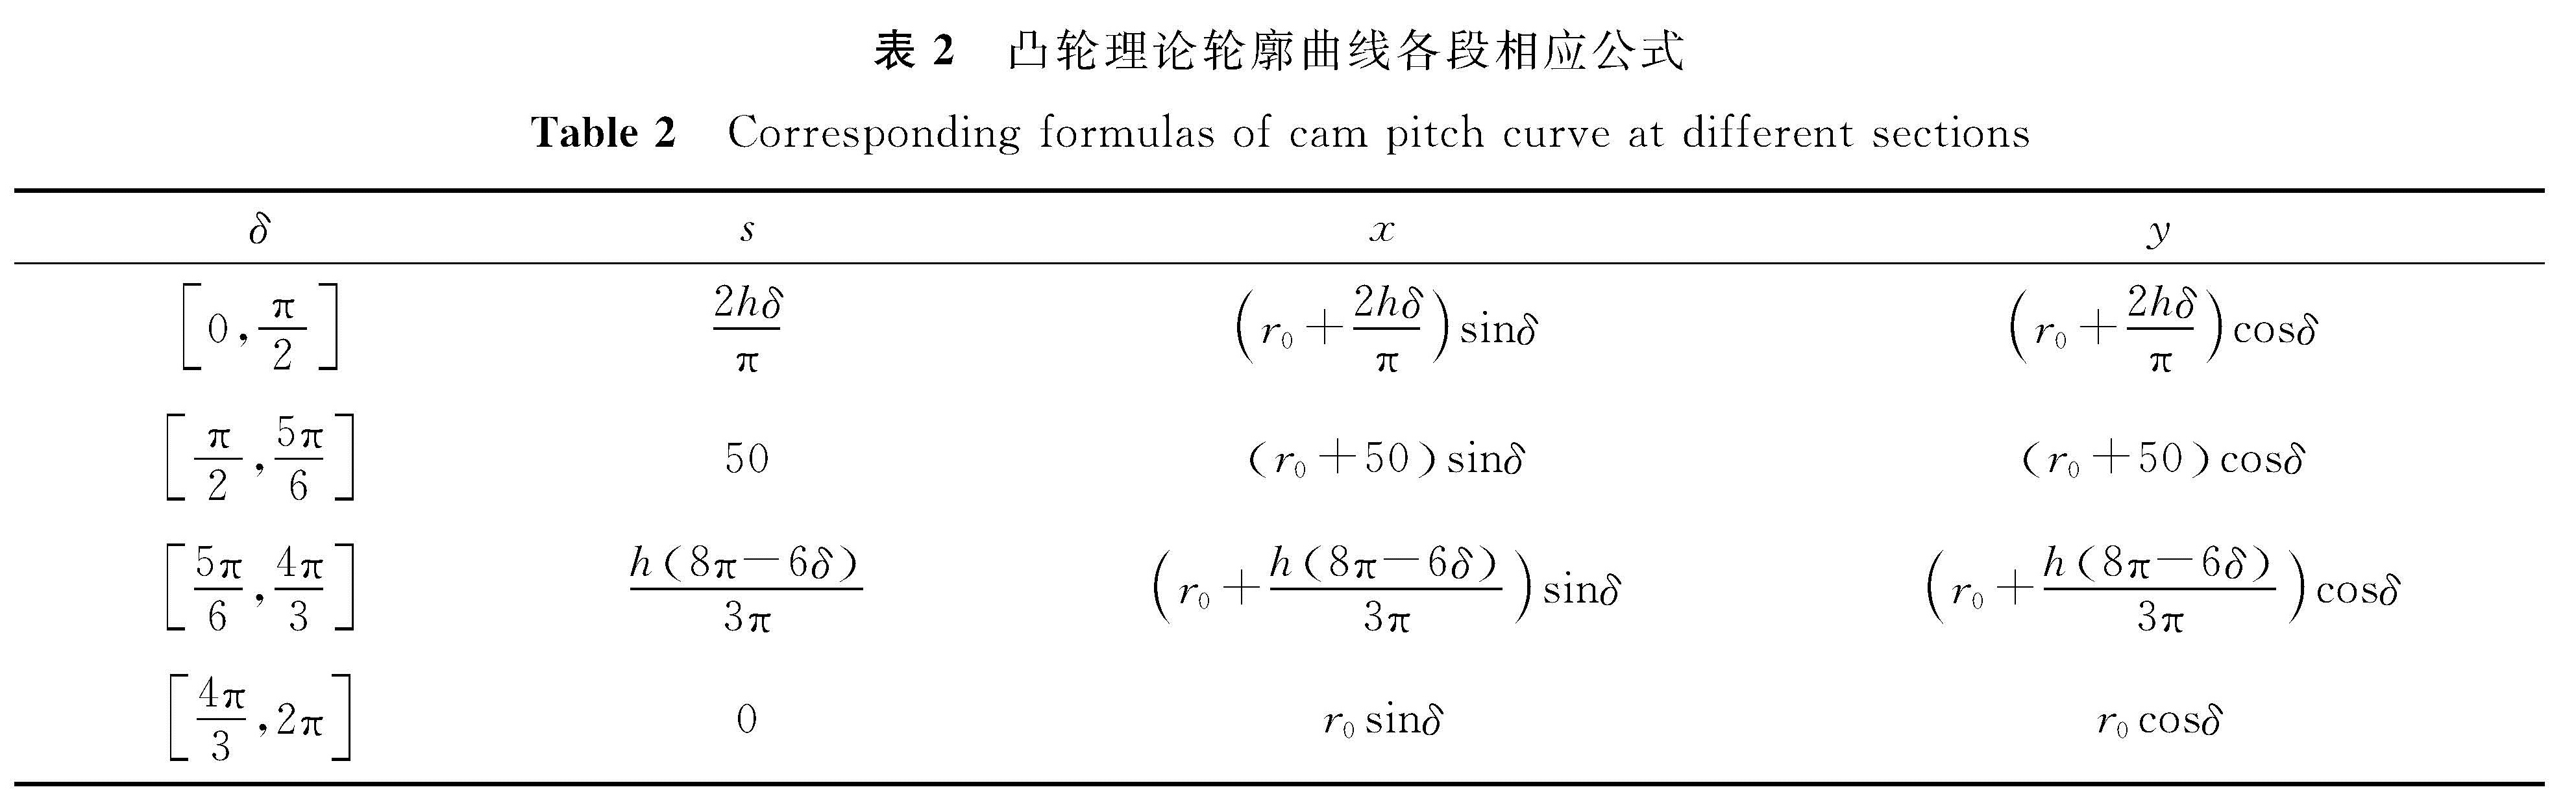 表2 凸轮理论轮廓曲线各段相应公式<br/>Table 2 Corresponding formulas of cam pitch curve at different sections